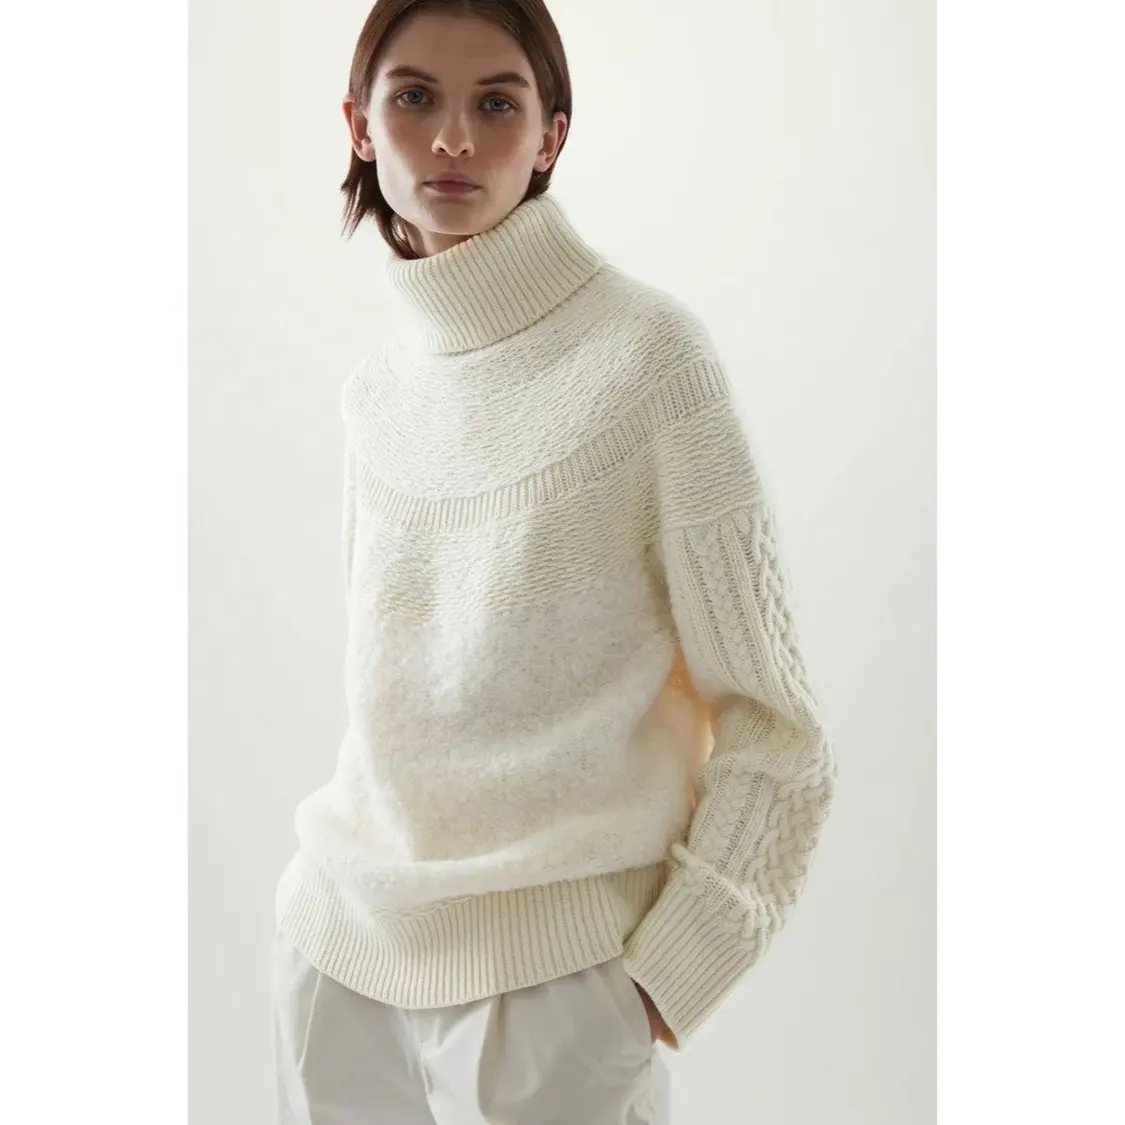 Winter White Sweater For Women Plus Size Crop Top 2022 Waffle Chunky Oversized Knitwear Wool Luxury Women Turtle Neck Sweater